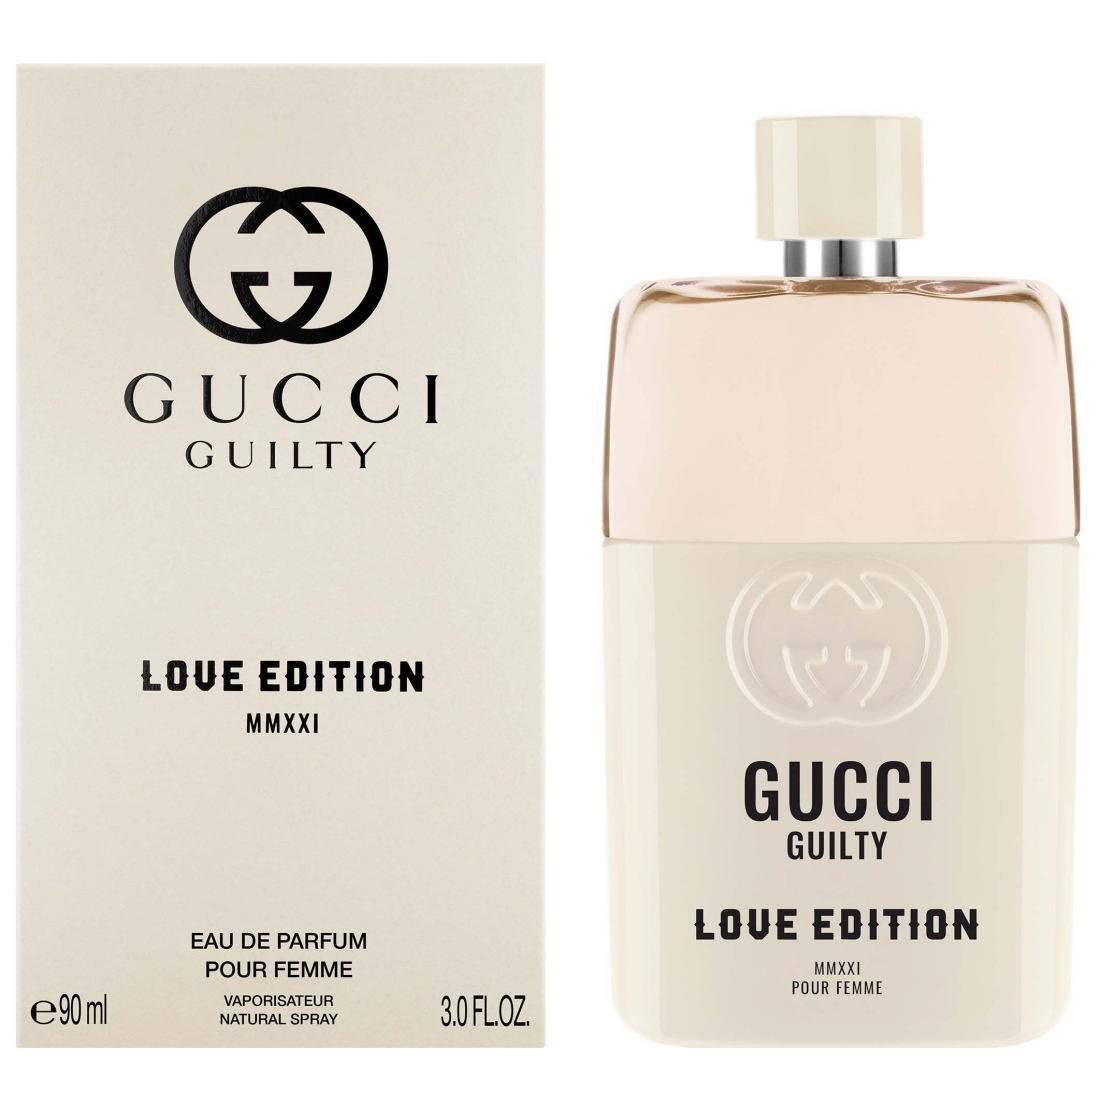 'Guilty Love Edition MMXXI Pour Femme' Eau De Parfum - 90 ml